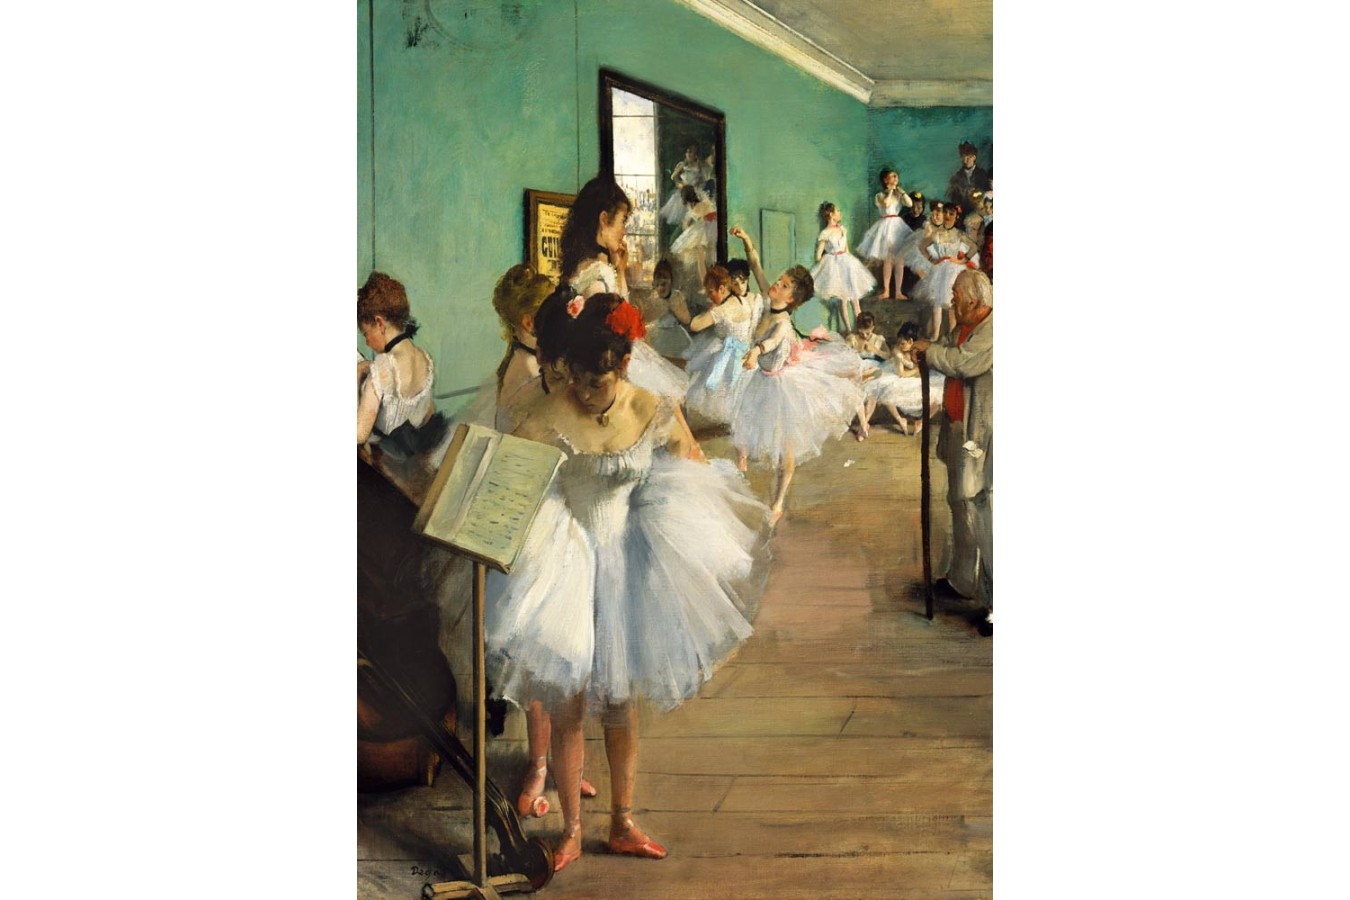 Puzzle 1000 piese - Edgar Degas: The Dance Class, 1874 (Art-by-Bluebird-60046)